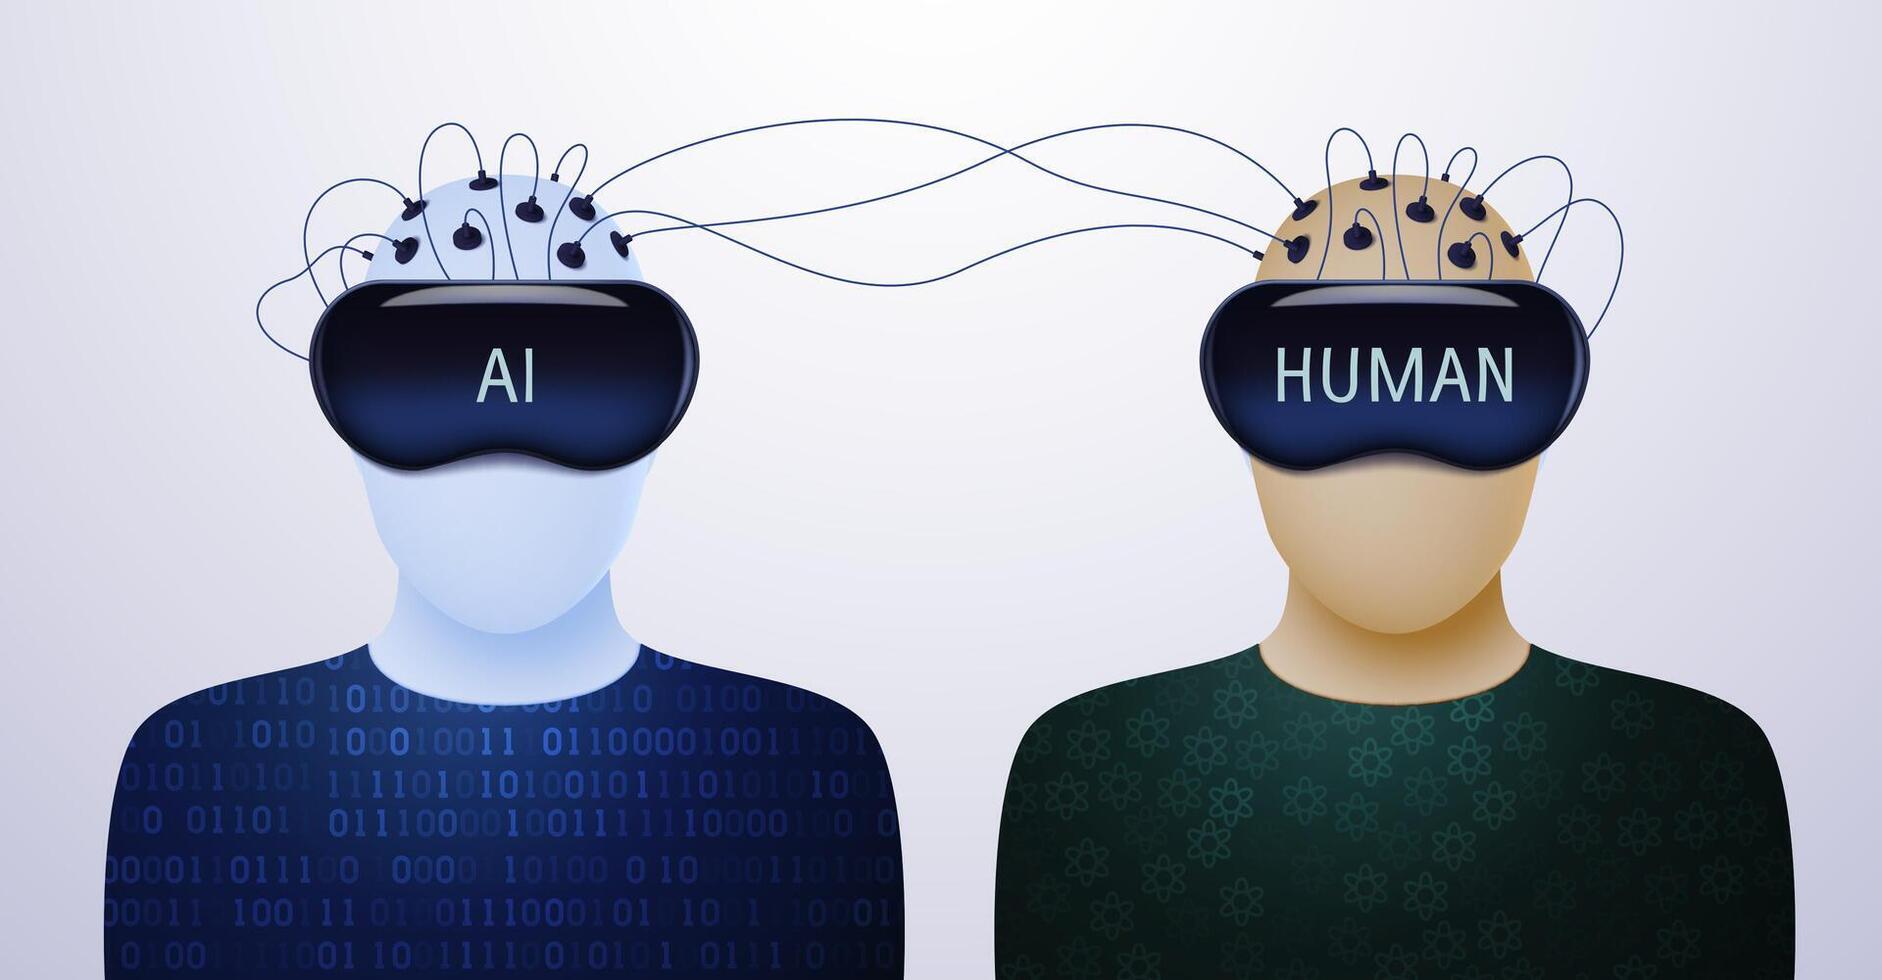 humanos y artificial inteligencia en vr cascos son conectado a cada otro por alambres concepto de aprendizaje y información intercambio. vector ilustración.